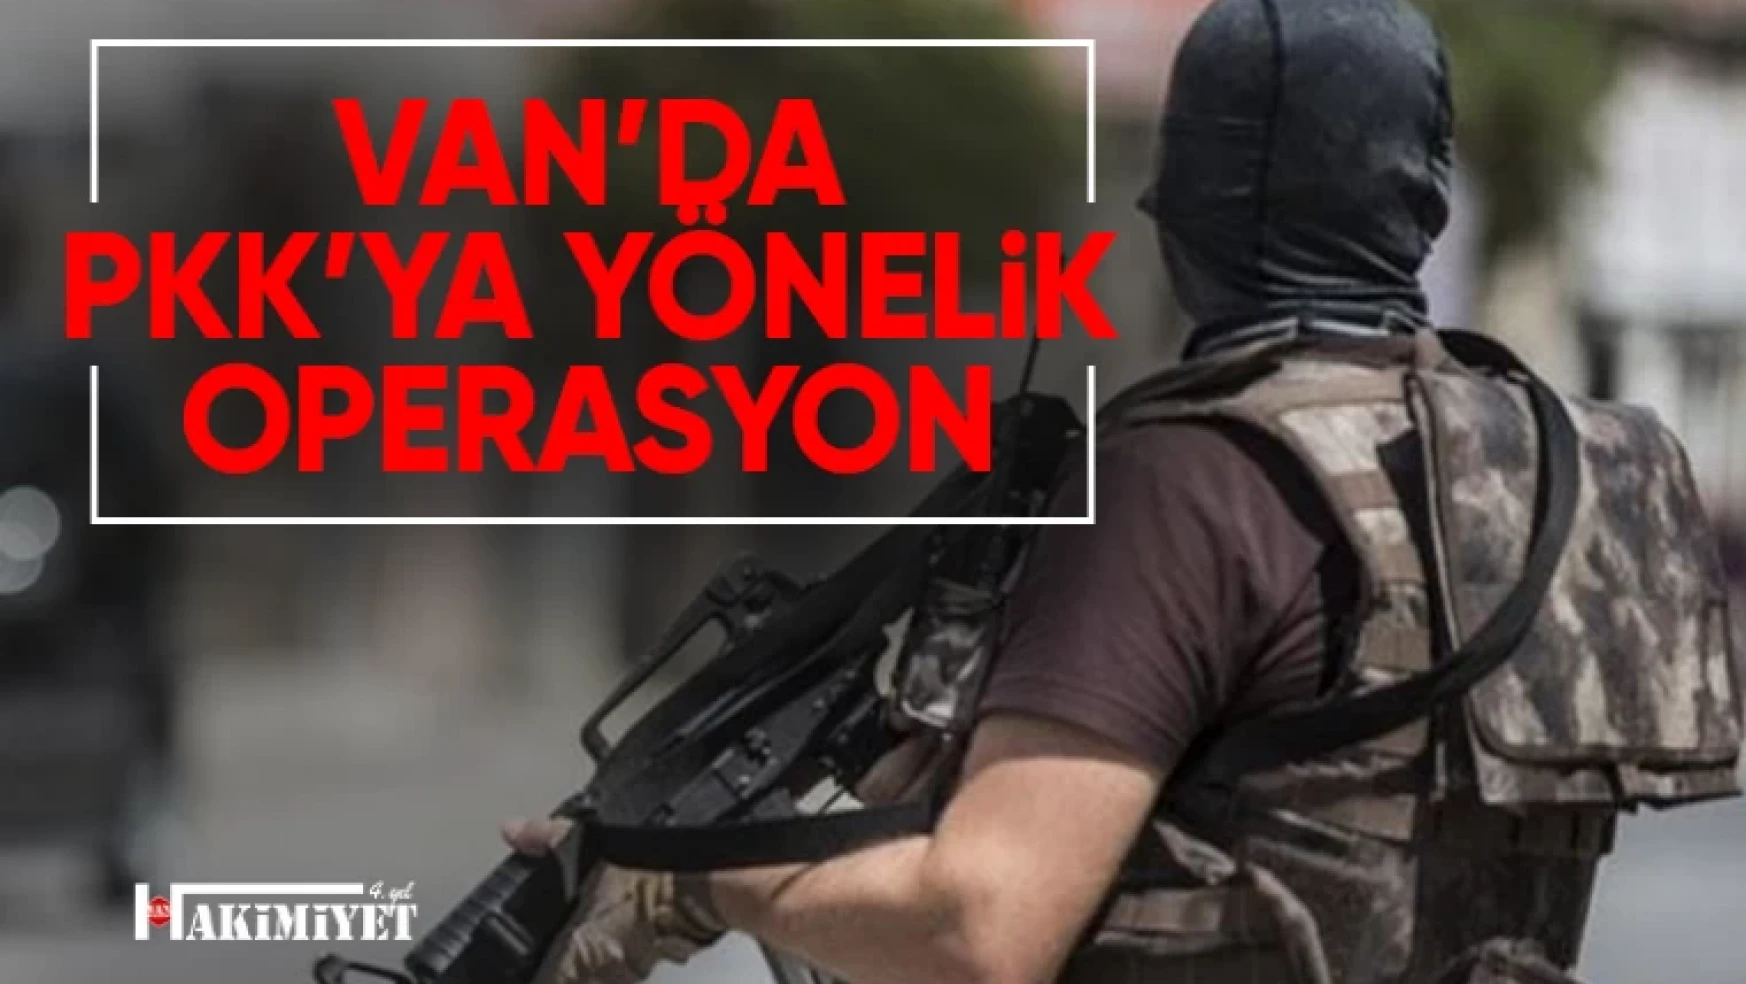 Van'da PKK'ya yönelik operasyon: 6 şüpheli hakkında işlem yapıldı